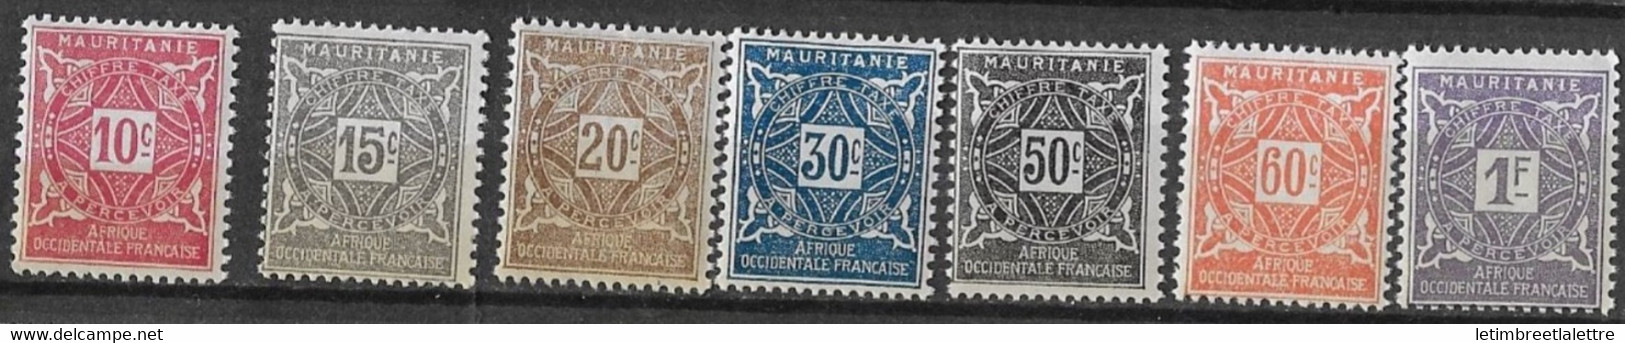 ⭐ Mauritanie - Taxe - YT N° 18 à 24 ** - Neuf Sans Charnière - 1914 ⭐ - Nuovi